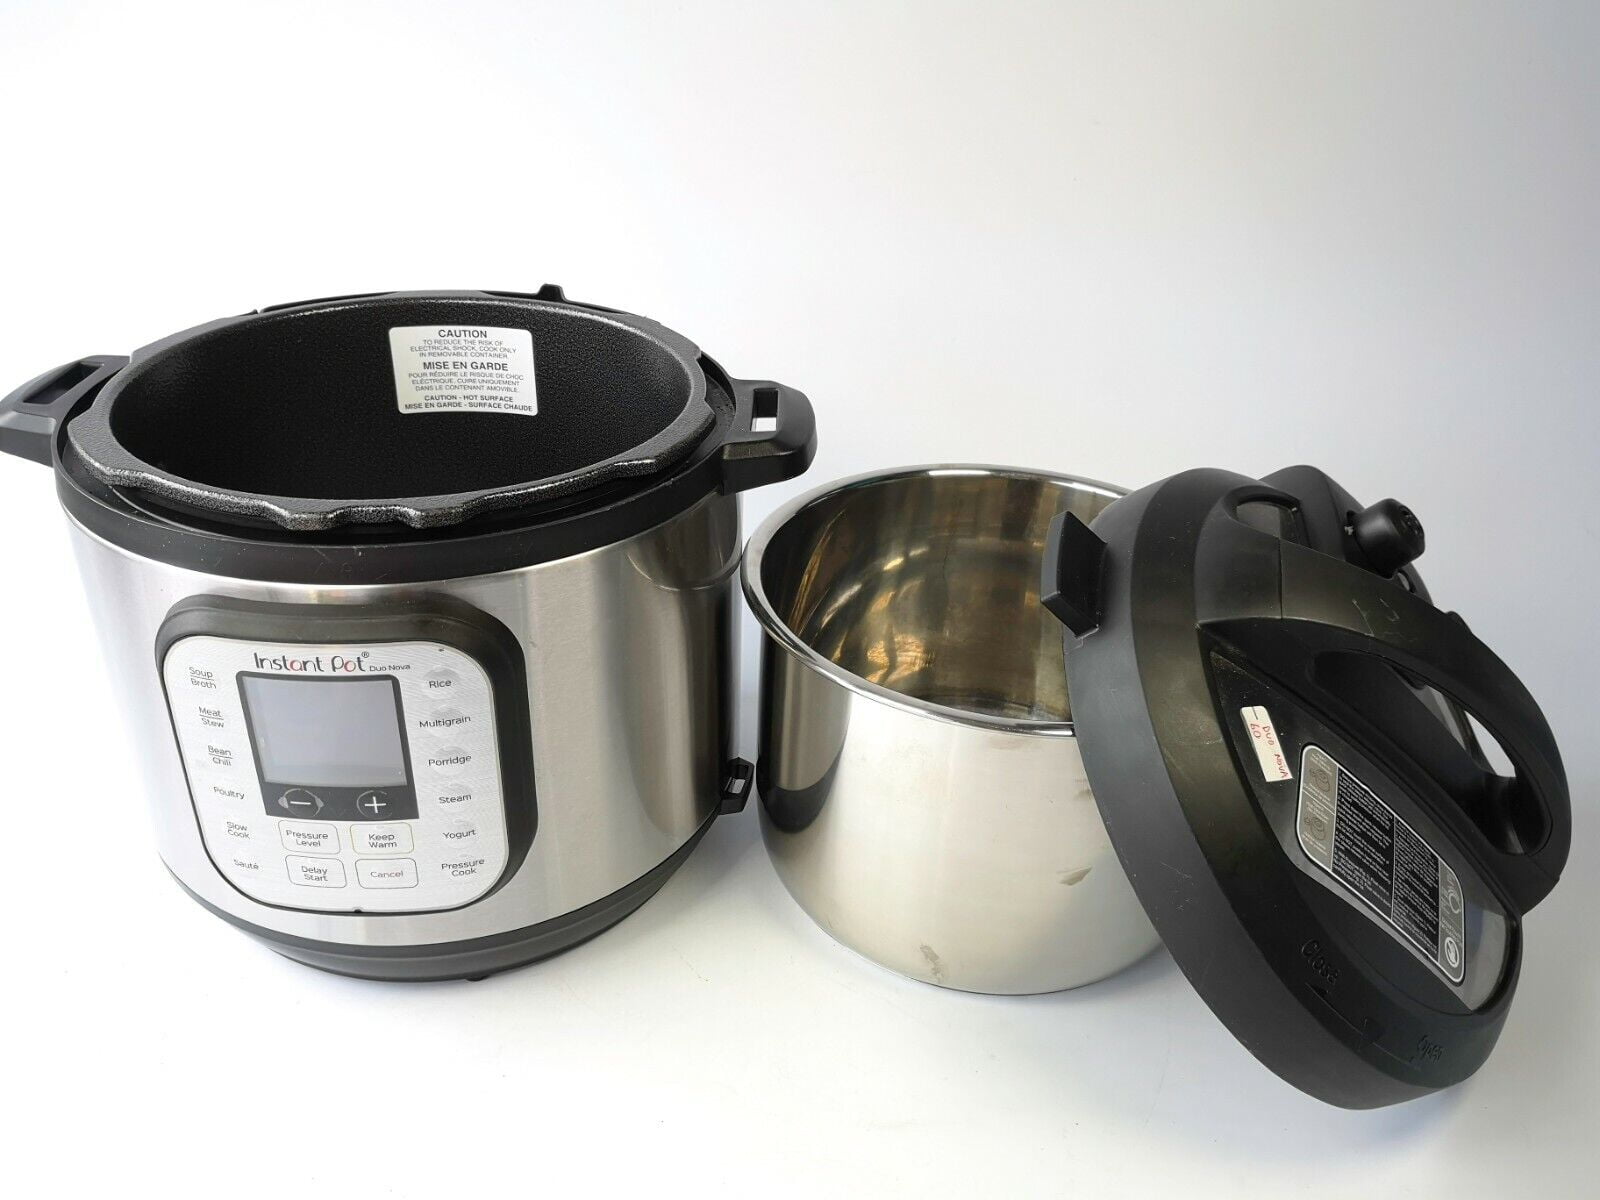 Instant Pot Duo Novo 6 Qt Multi Use Pressure Cooker NiB Serves 6